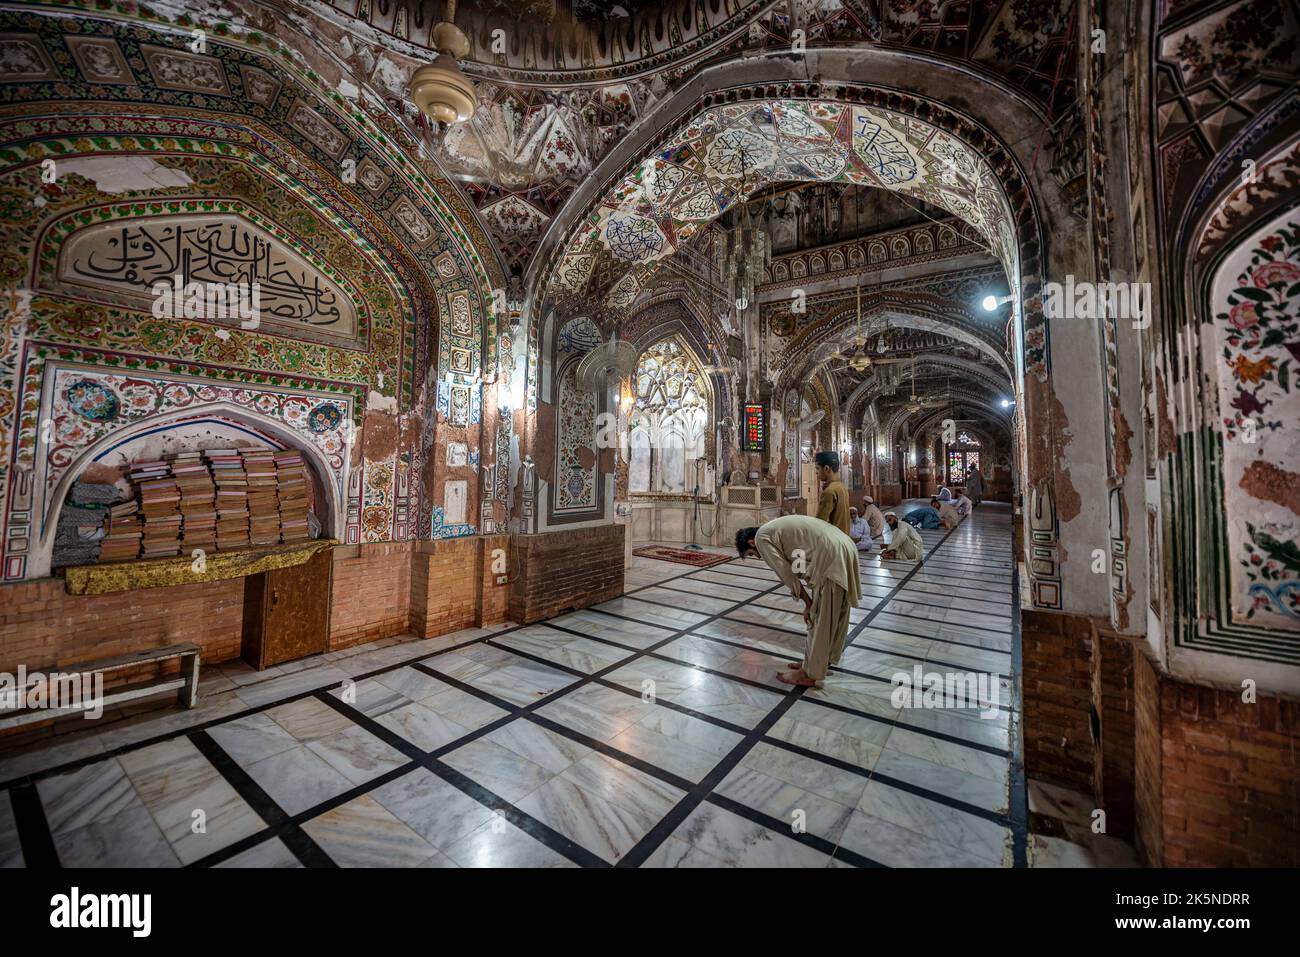 Intérieurs richement décorés de la mosquée Mohabbat Khan, Peshawar, province de Khyber Pakhtunkhwa, Pakistan Banque D'Images